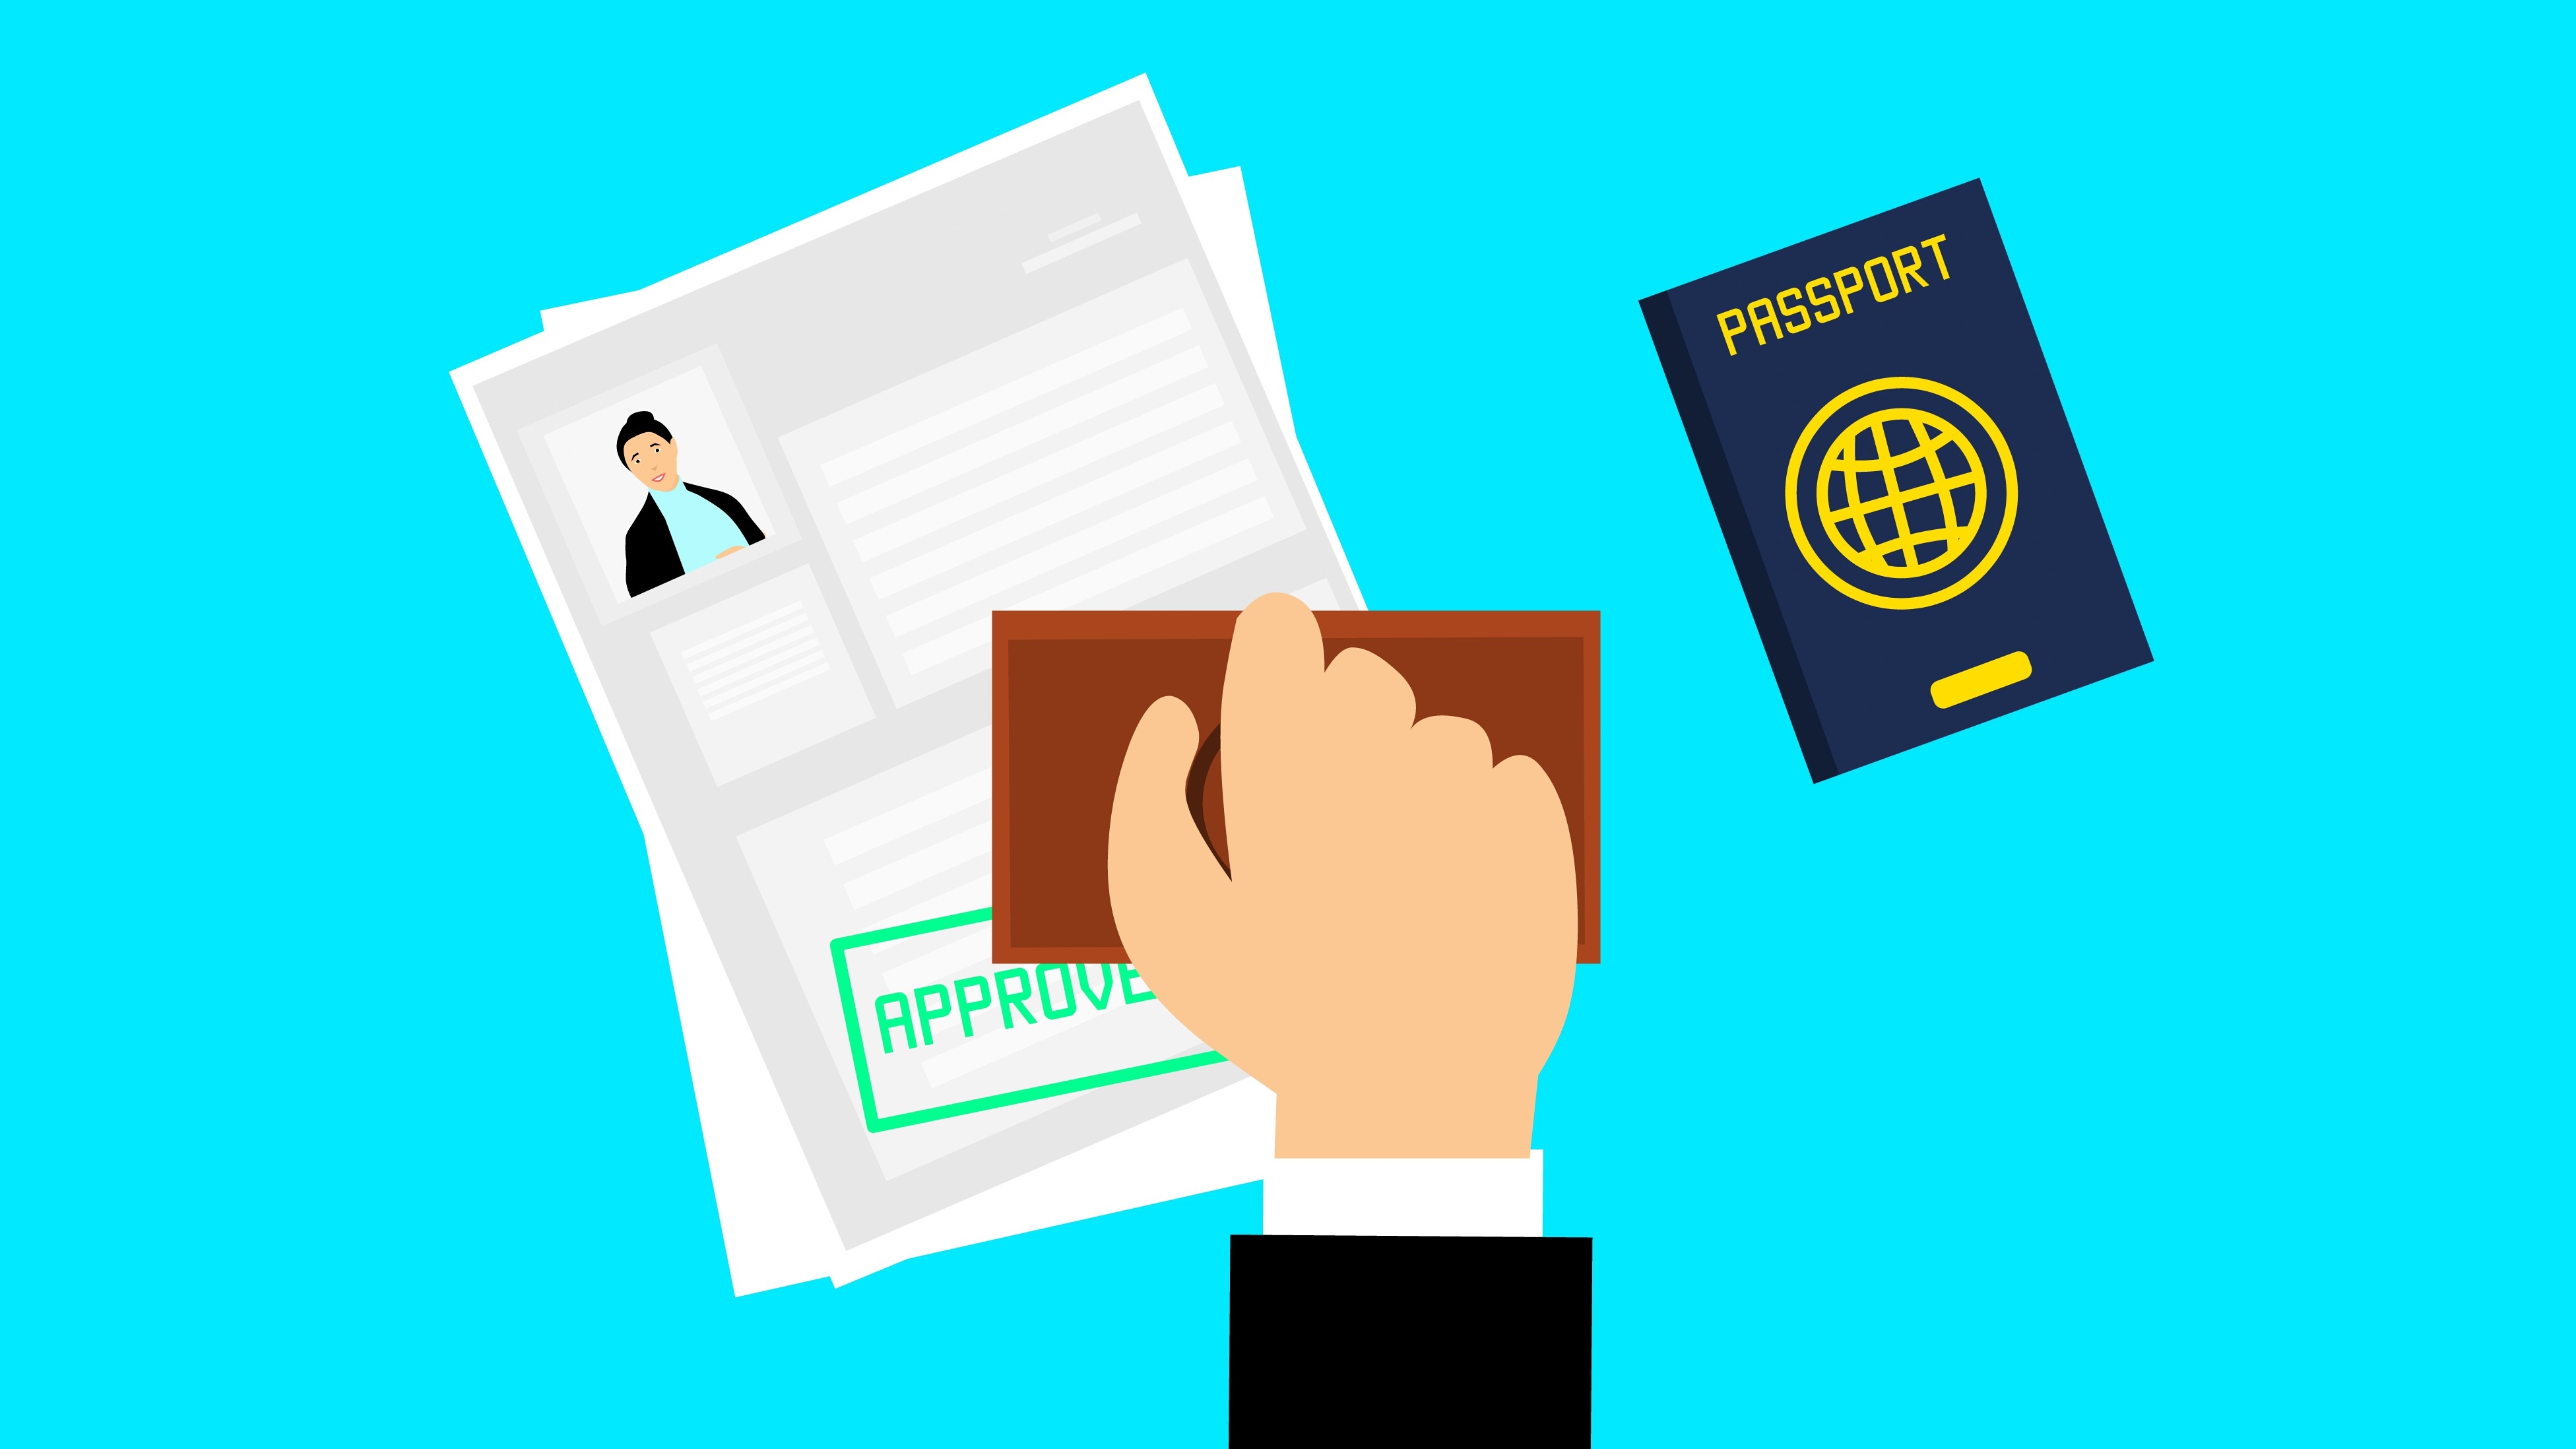 Không cần làm lại thẻ bảo hiểm khi thay đổi số ID, Sở Bảo hiểm Y tế chủ động cấp thẻ mới cho người nước ngoài. (Ảnh minh họa: kho ảnh Pixabay)